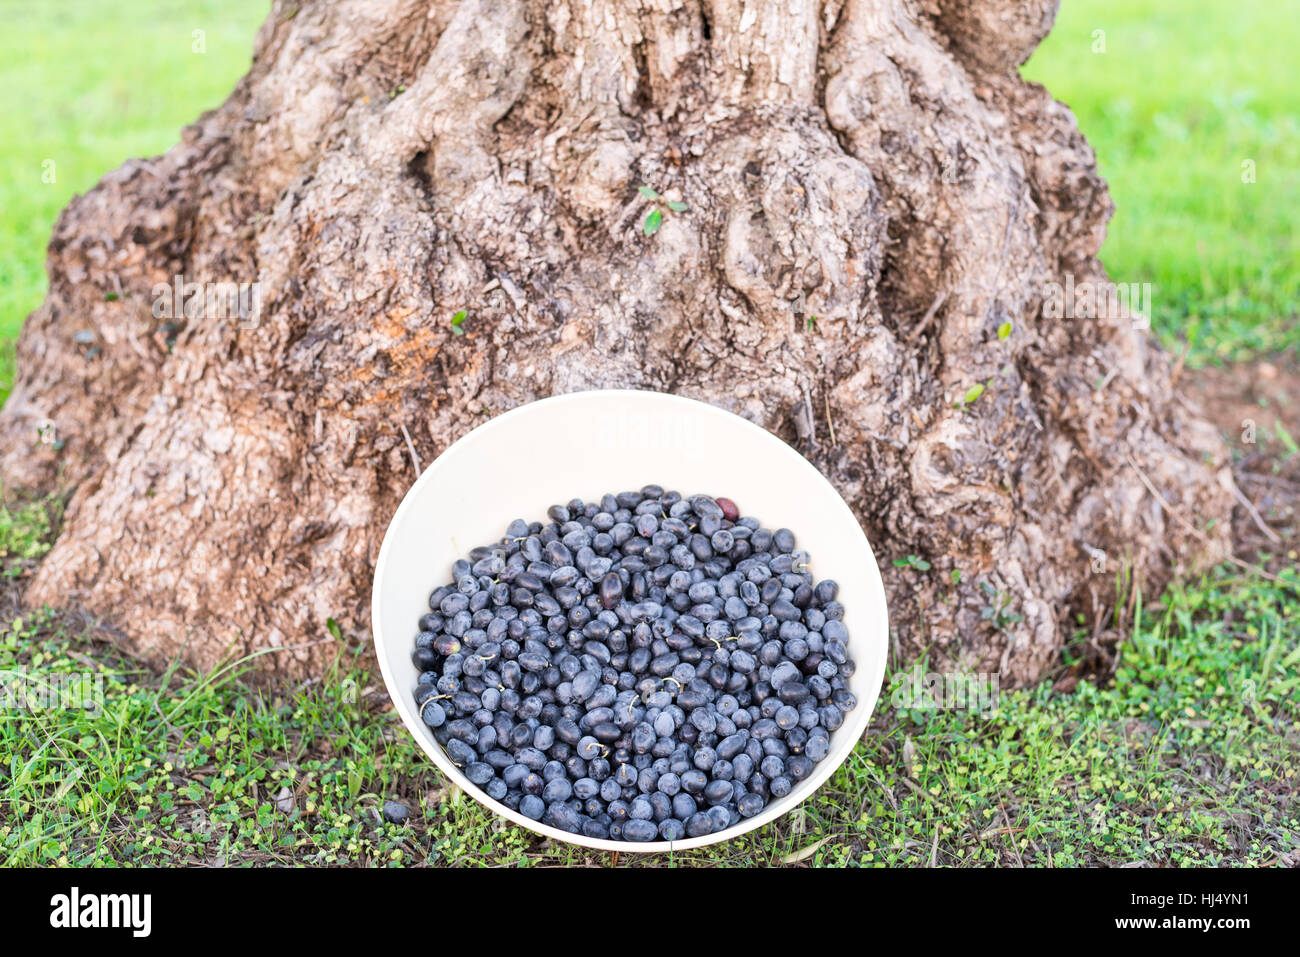 Bol blanc frais, de mûres cueillies à la main des olives noires biologiques de la fulla de salze (aka salceña) variété, appuyé contre le tronc noueux d'un olivier Banque D'Images